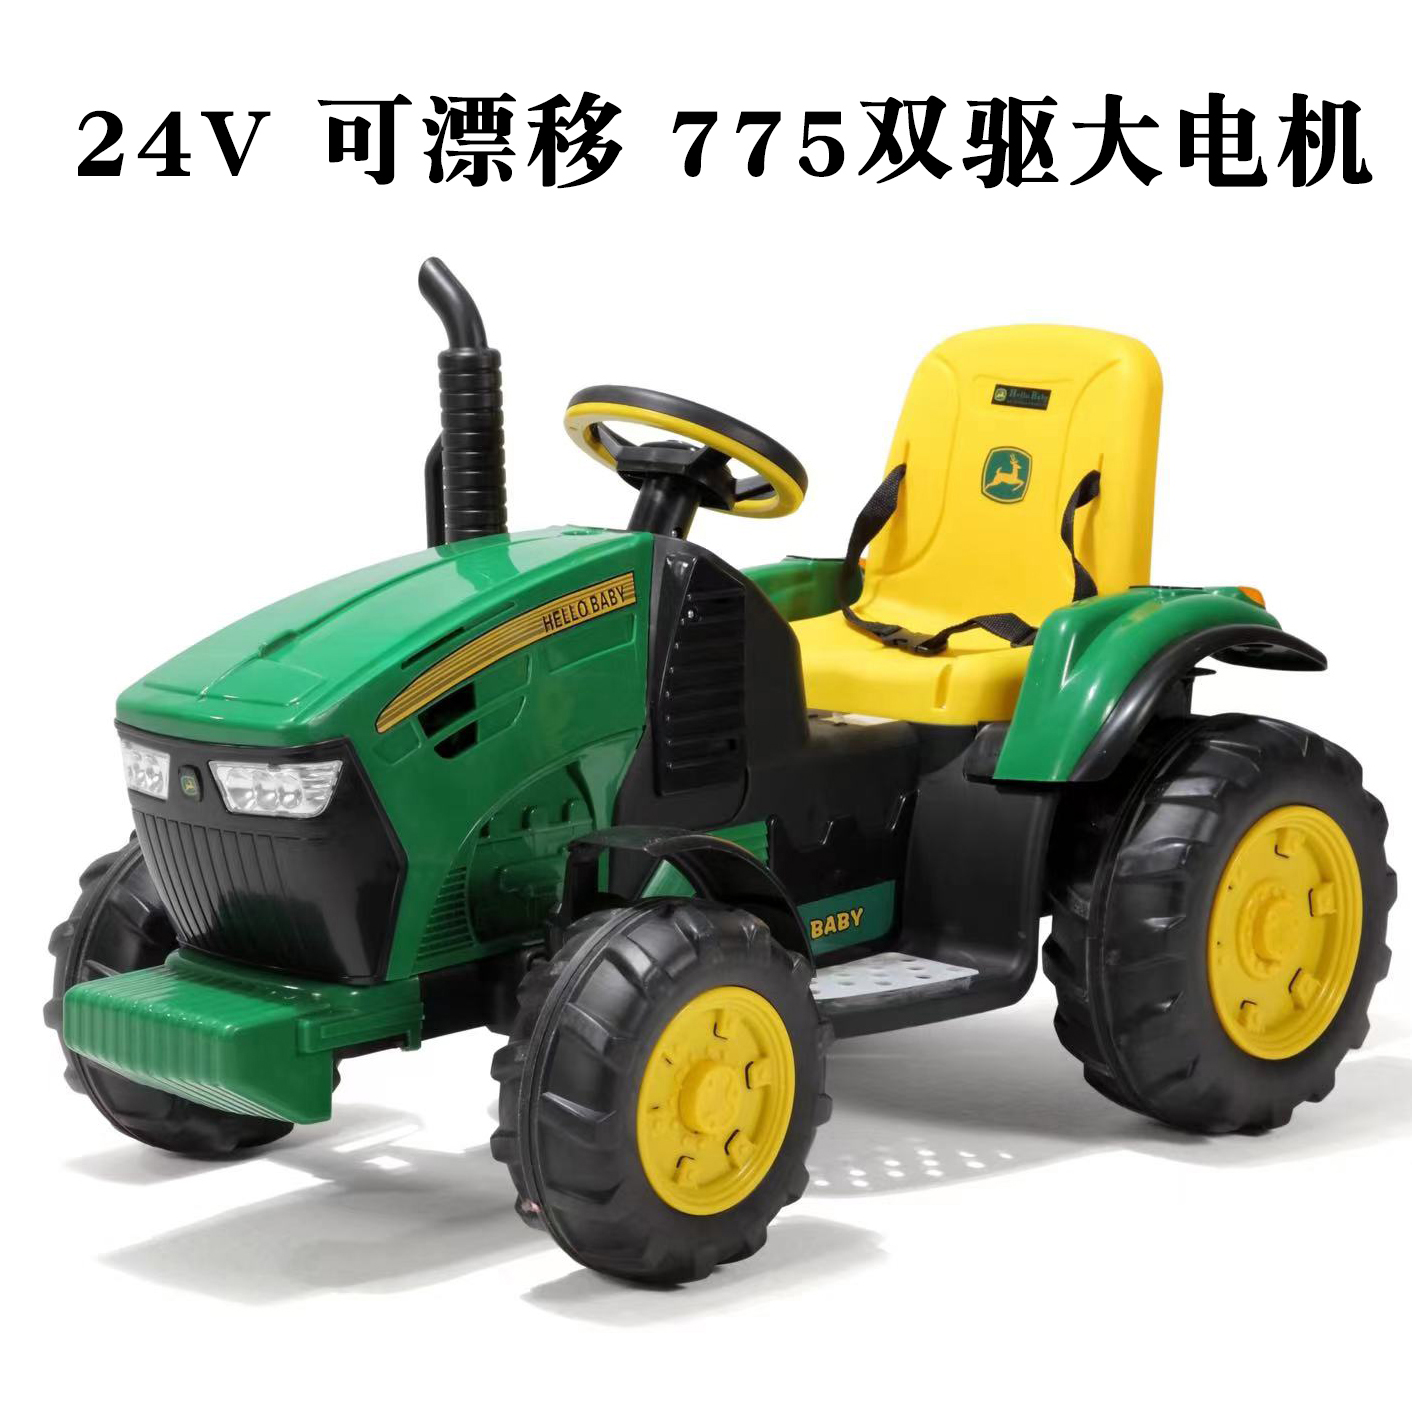 儿童电动拖拉机玩具车可坐充电24v男孩宝宝大号四轮农场游乐礼物